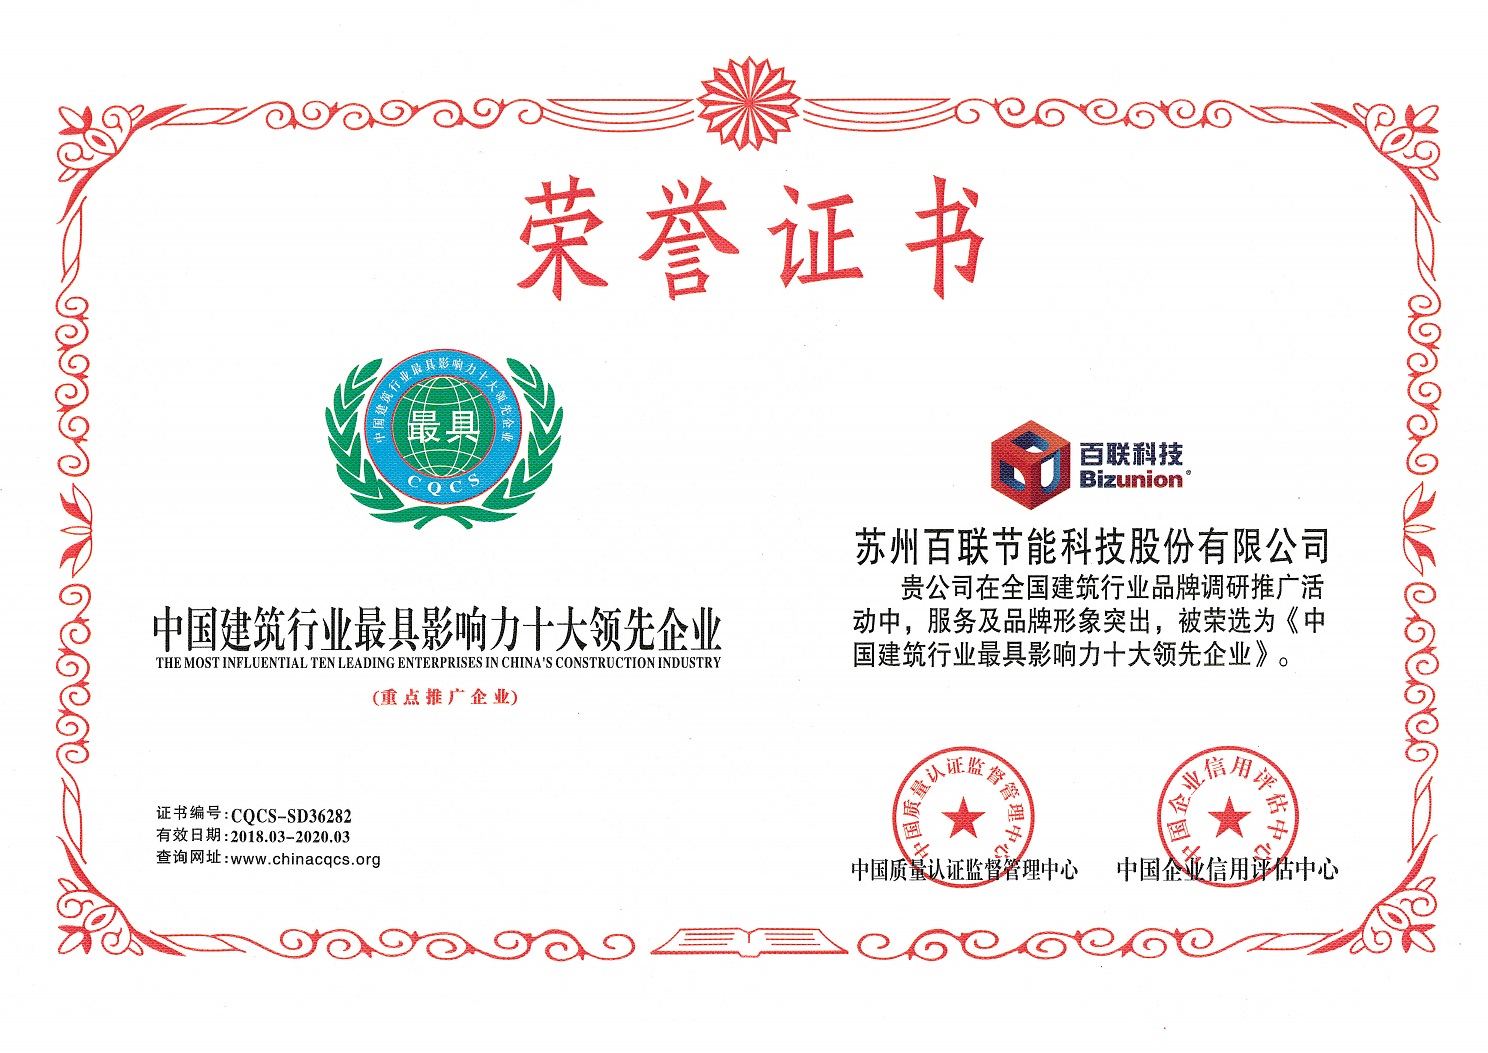 热烈祝贺苏州百联科技获评“中国建筑行业最具影响力十大领先企业”